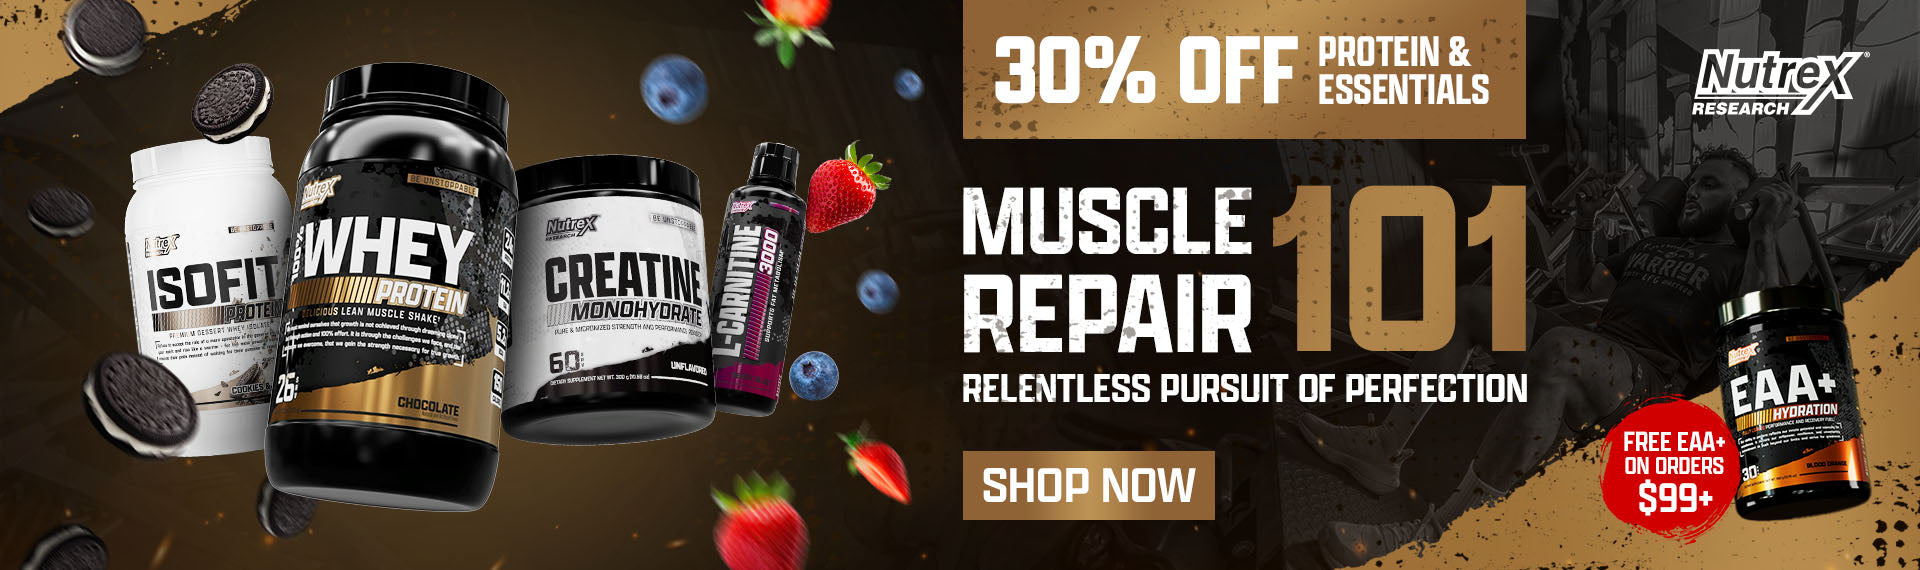 30% Off Protein & Essentials